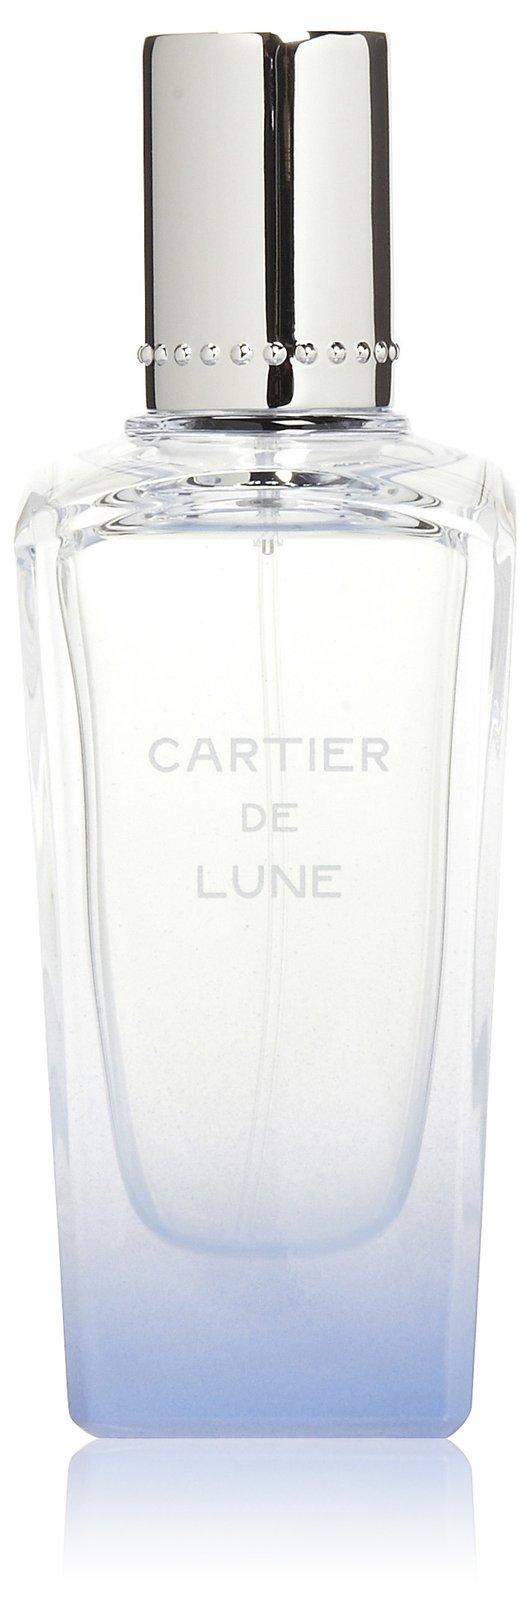 Cartier Cartier De Lune Eau De Toilette